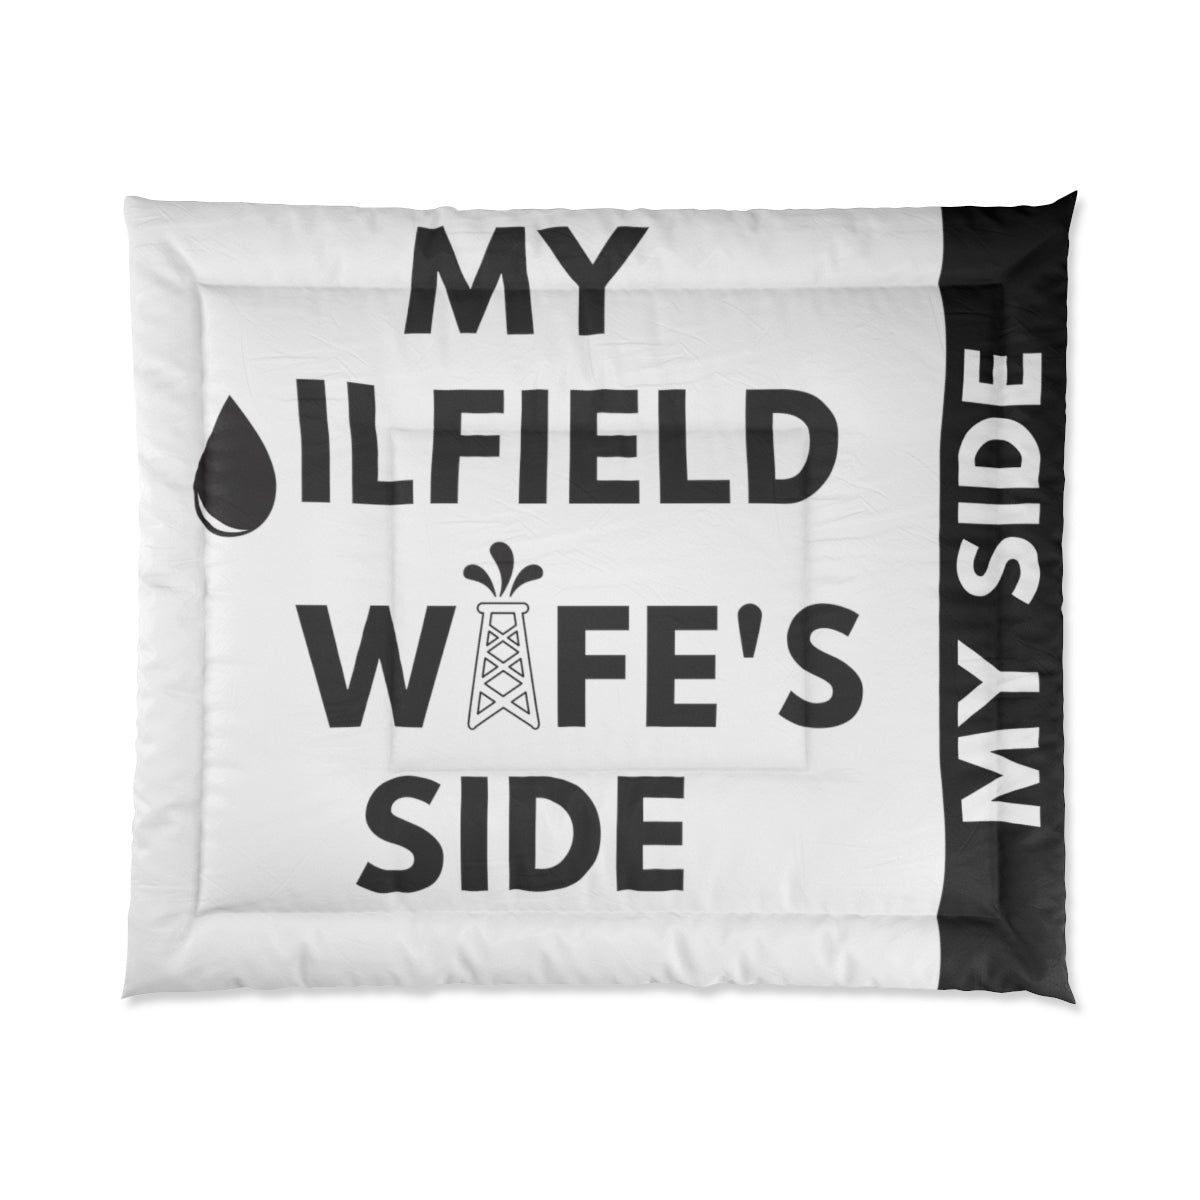 My Oilfield Wife's Side Comforter